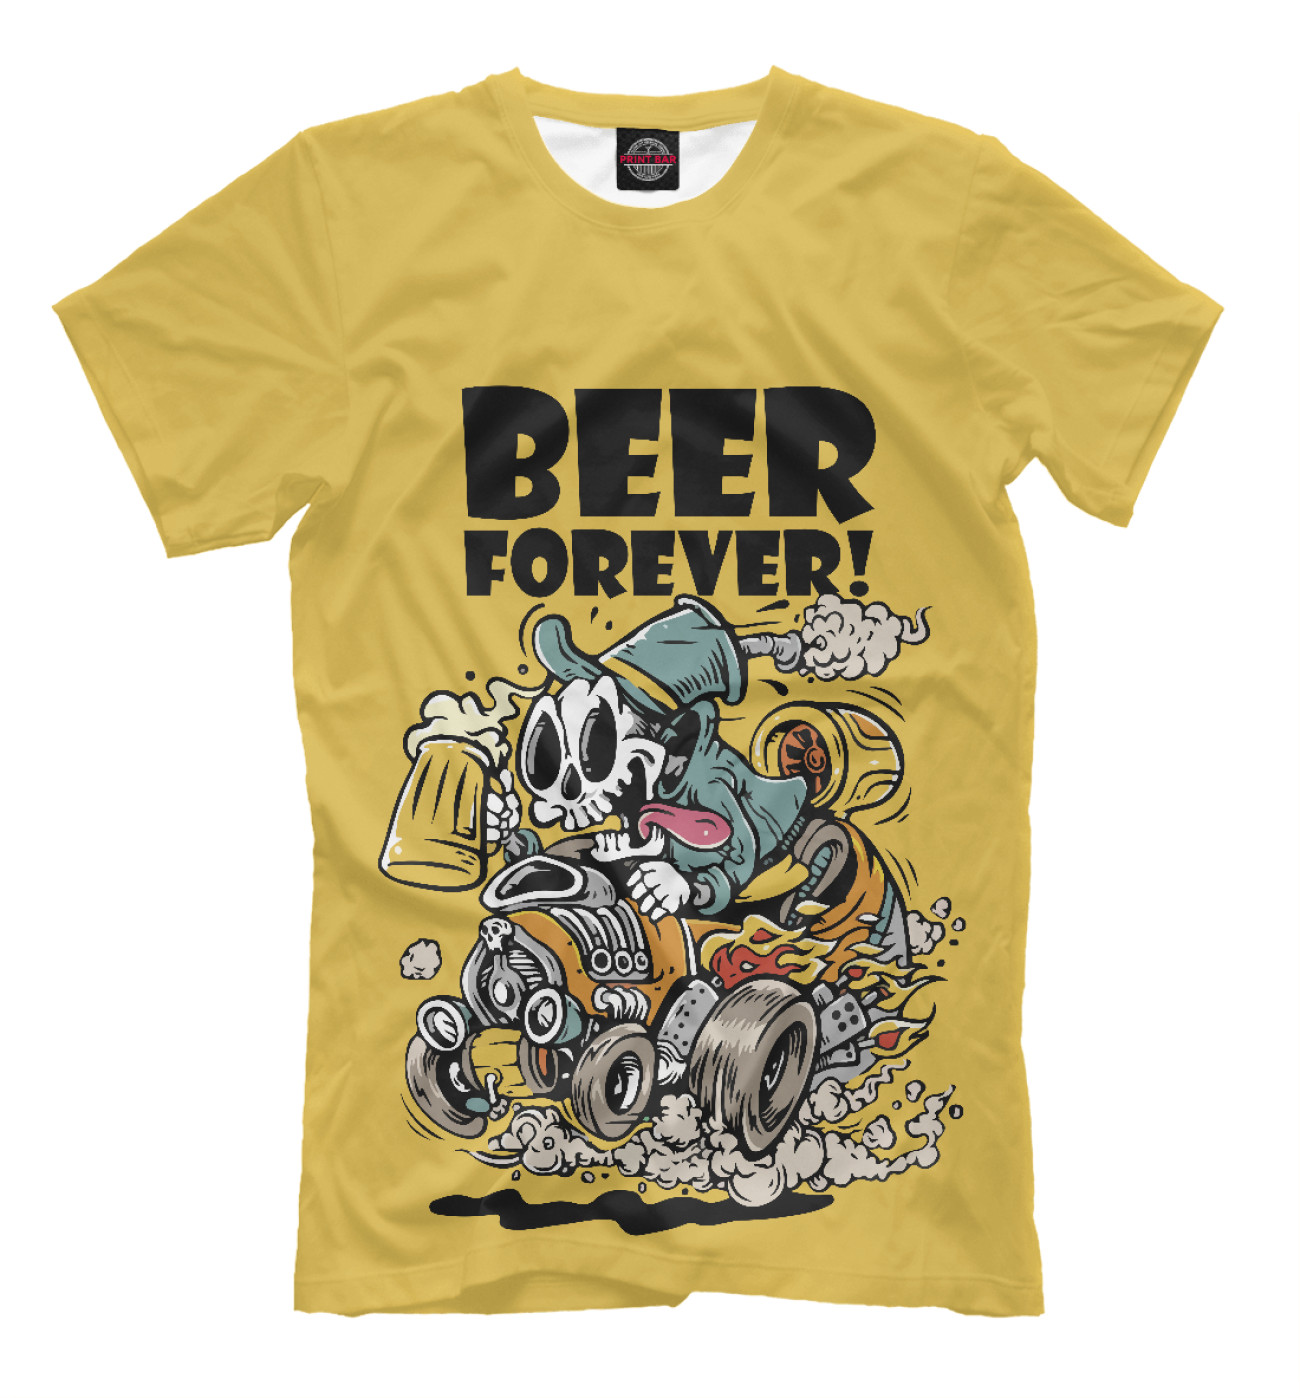 Мужская Футболка Beer forever, артикул: PIV-887590-fut-2